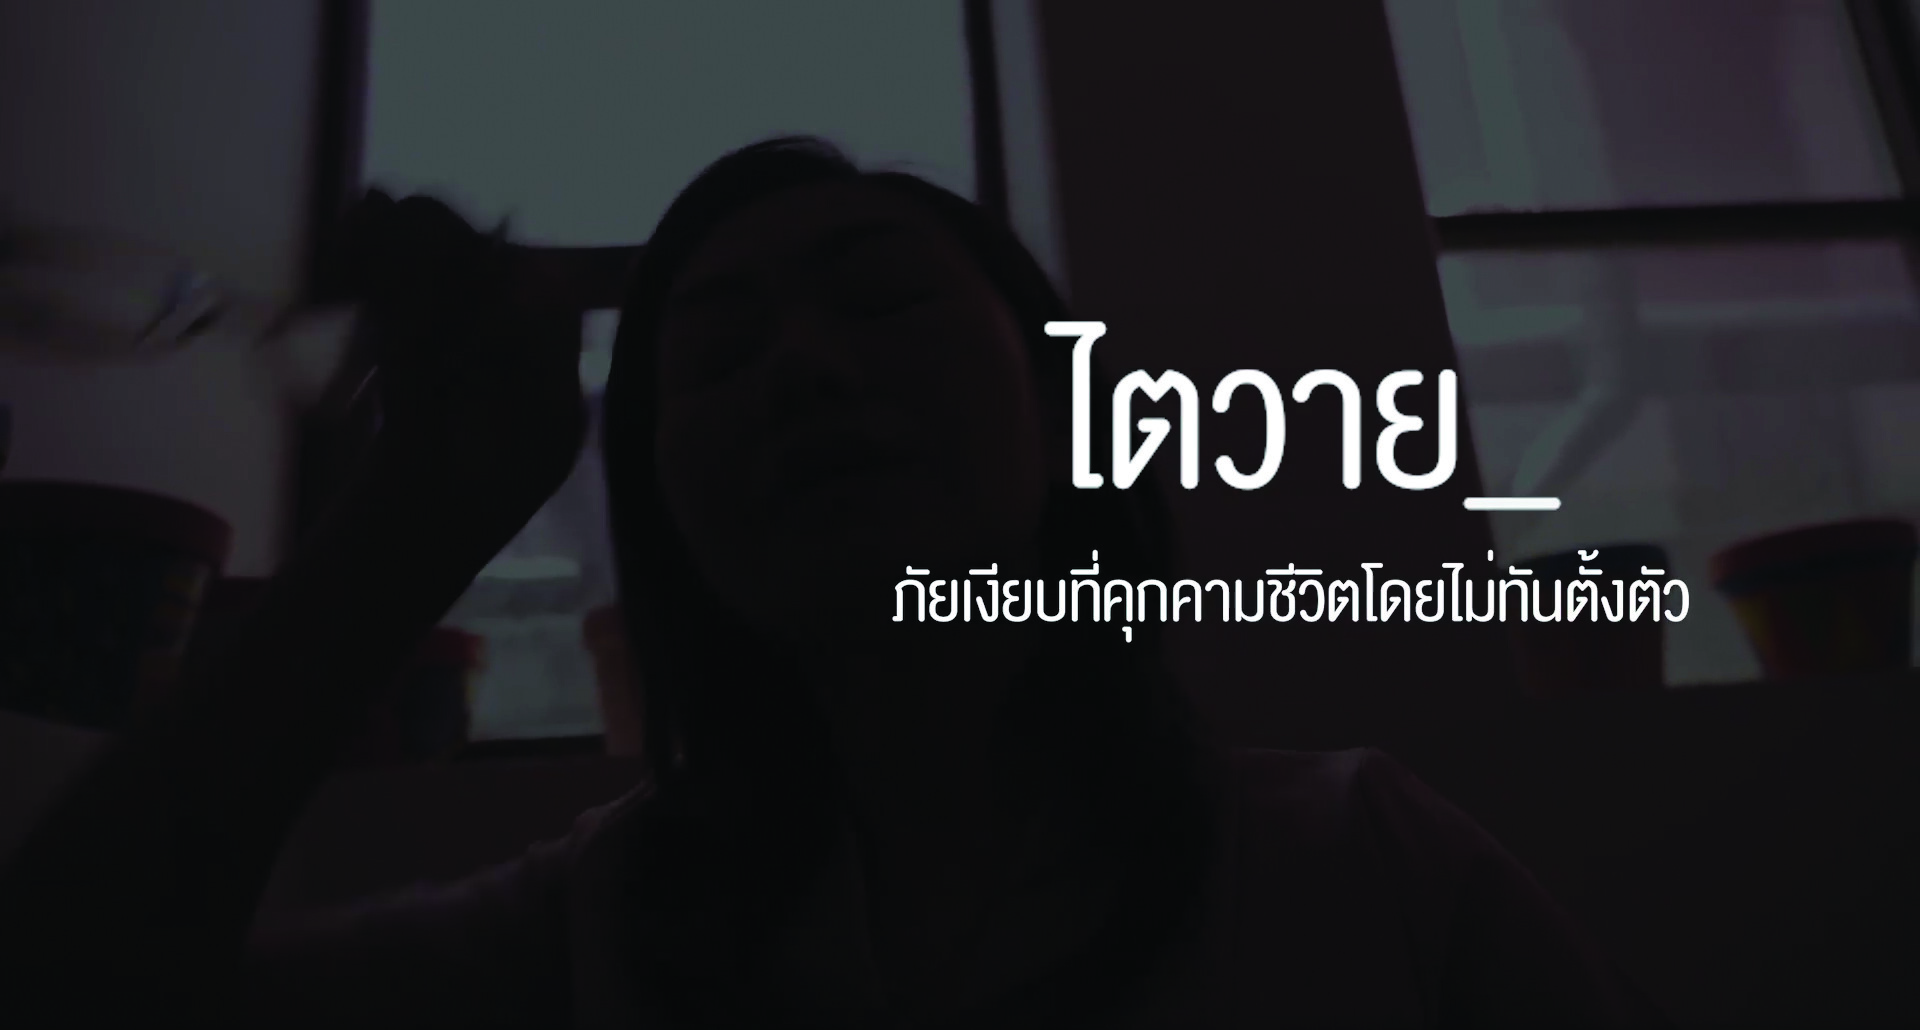 สมาคมเพื่อนโรคไตแห่งประเทศไทย ชวนชมเรื่องจริงจากผู้ป่วย "โรคไตเรื้อรัง .. รู้ไว้ รักษาเร็ว"